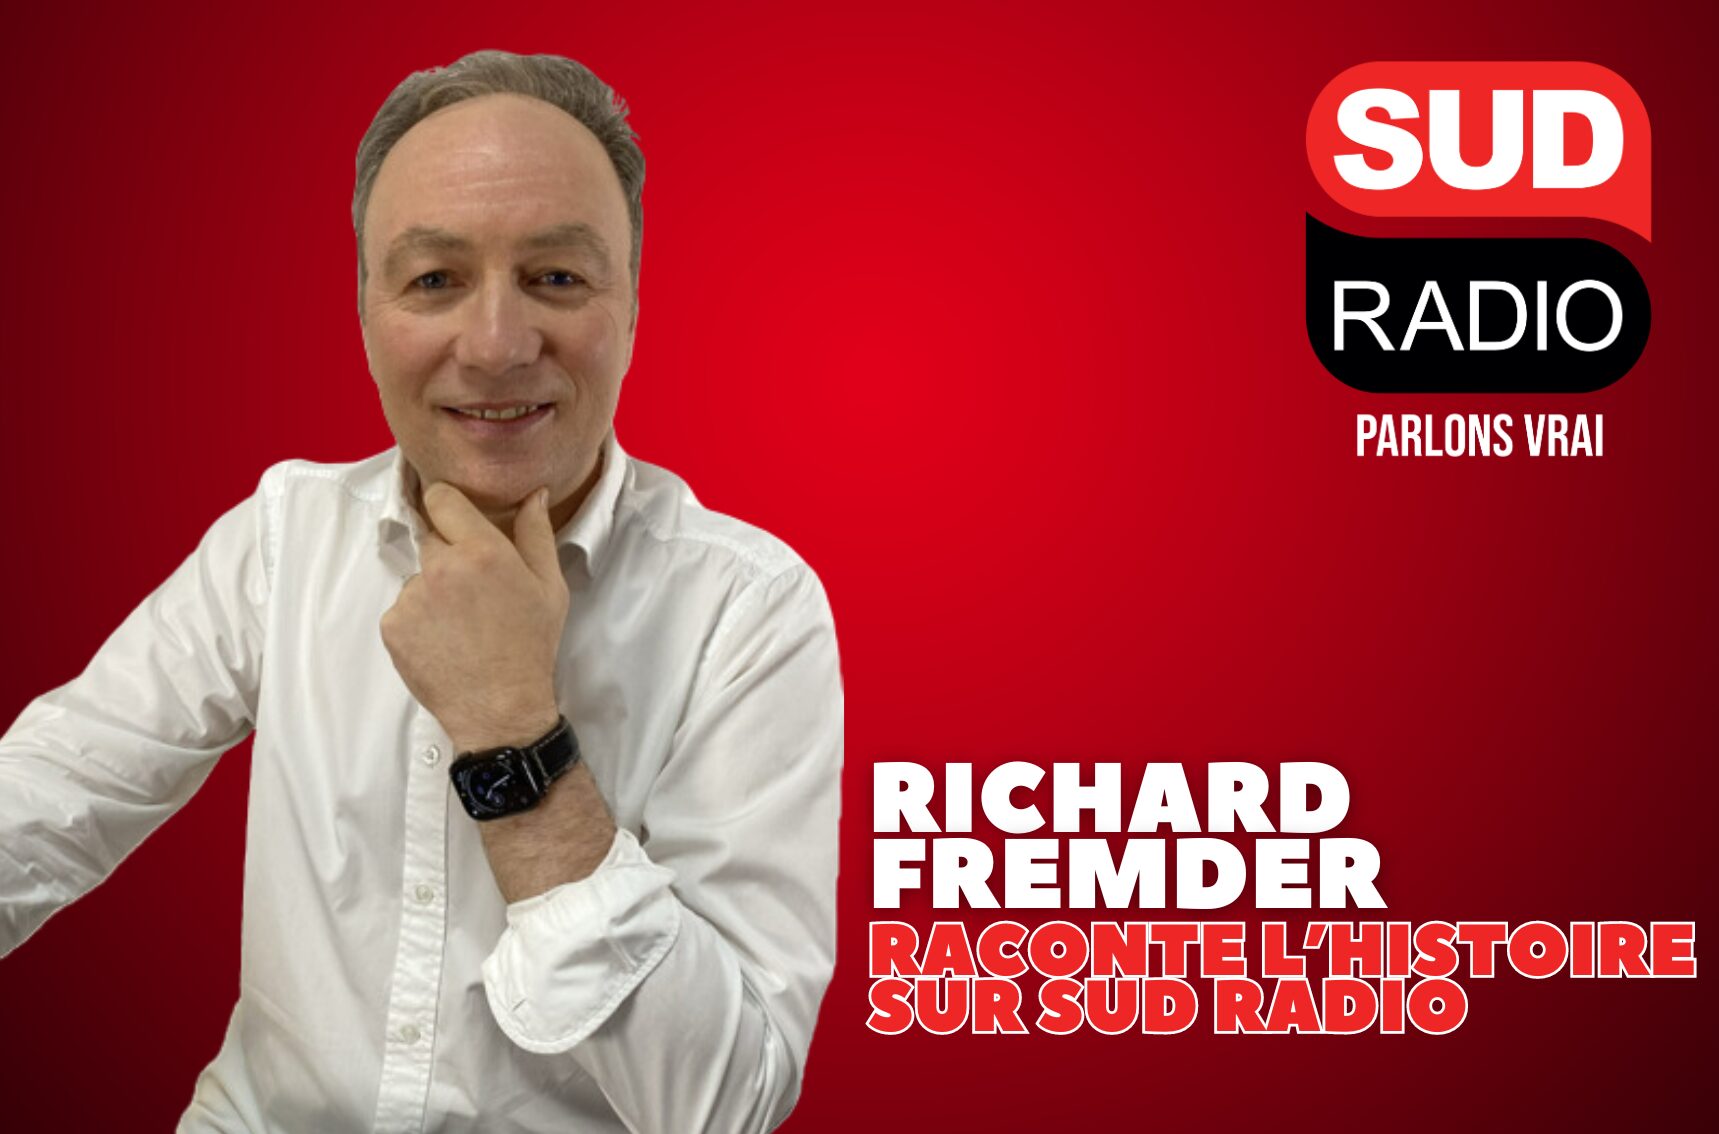 Richard Fremder, historien émérite et animateur radio depuis plus de 13 ans, est une figure incontournable pour les amateurs d’Histoire sur Sud Radio. Avec une passion inébranlable pour la narration des événements du passé, il s'est distingué par son talent à rendre l’Histoire à la fois accessible et fascinante.